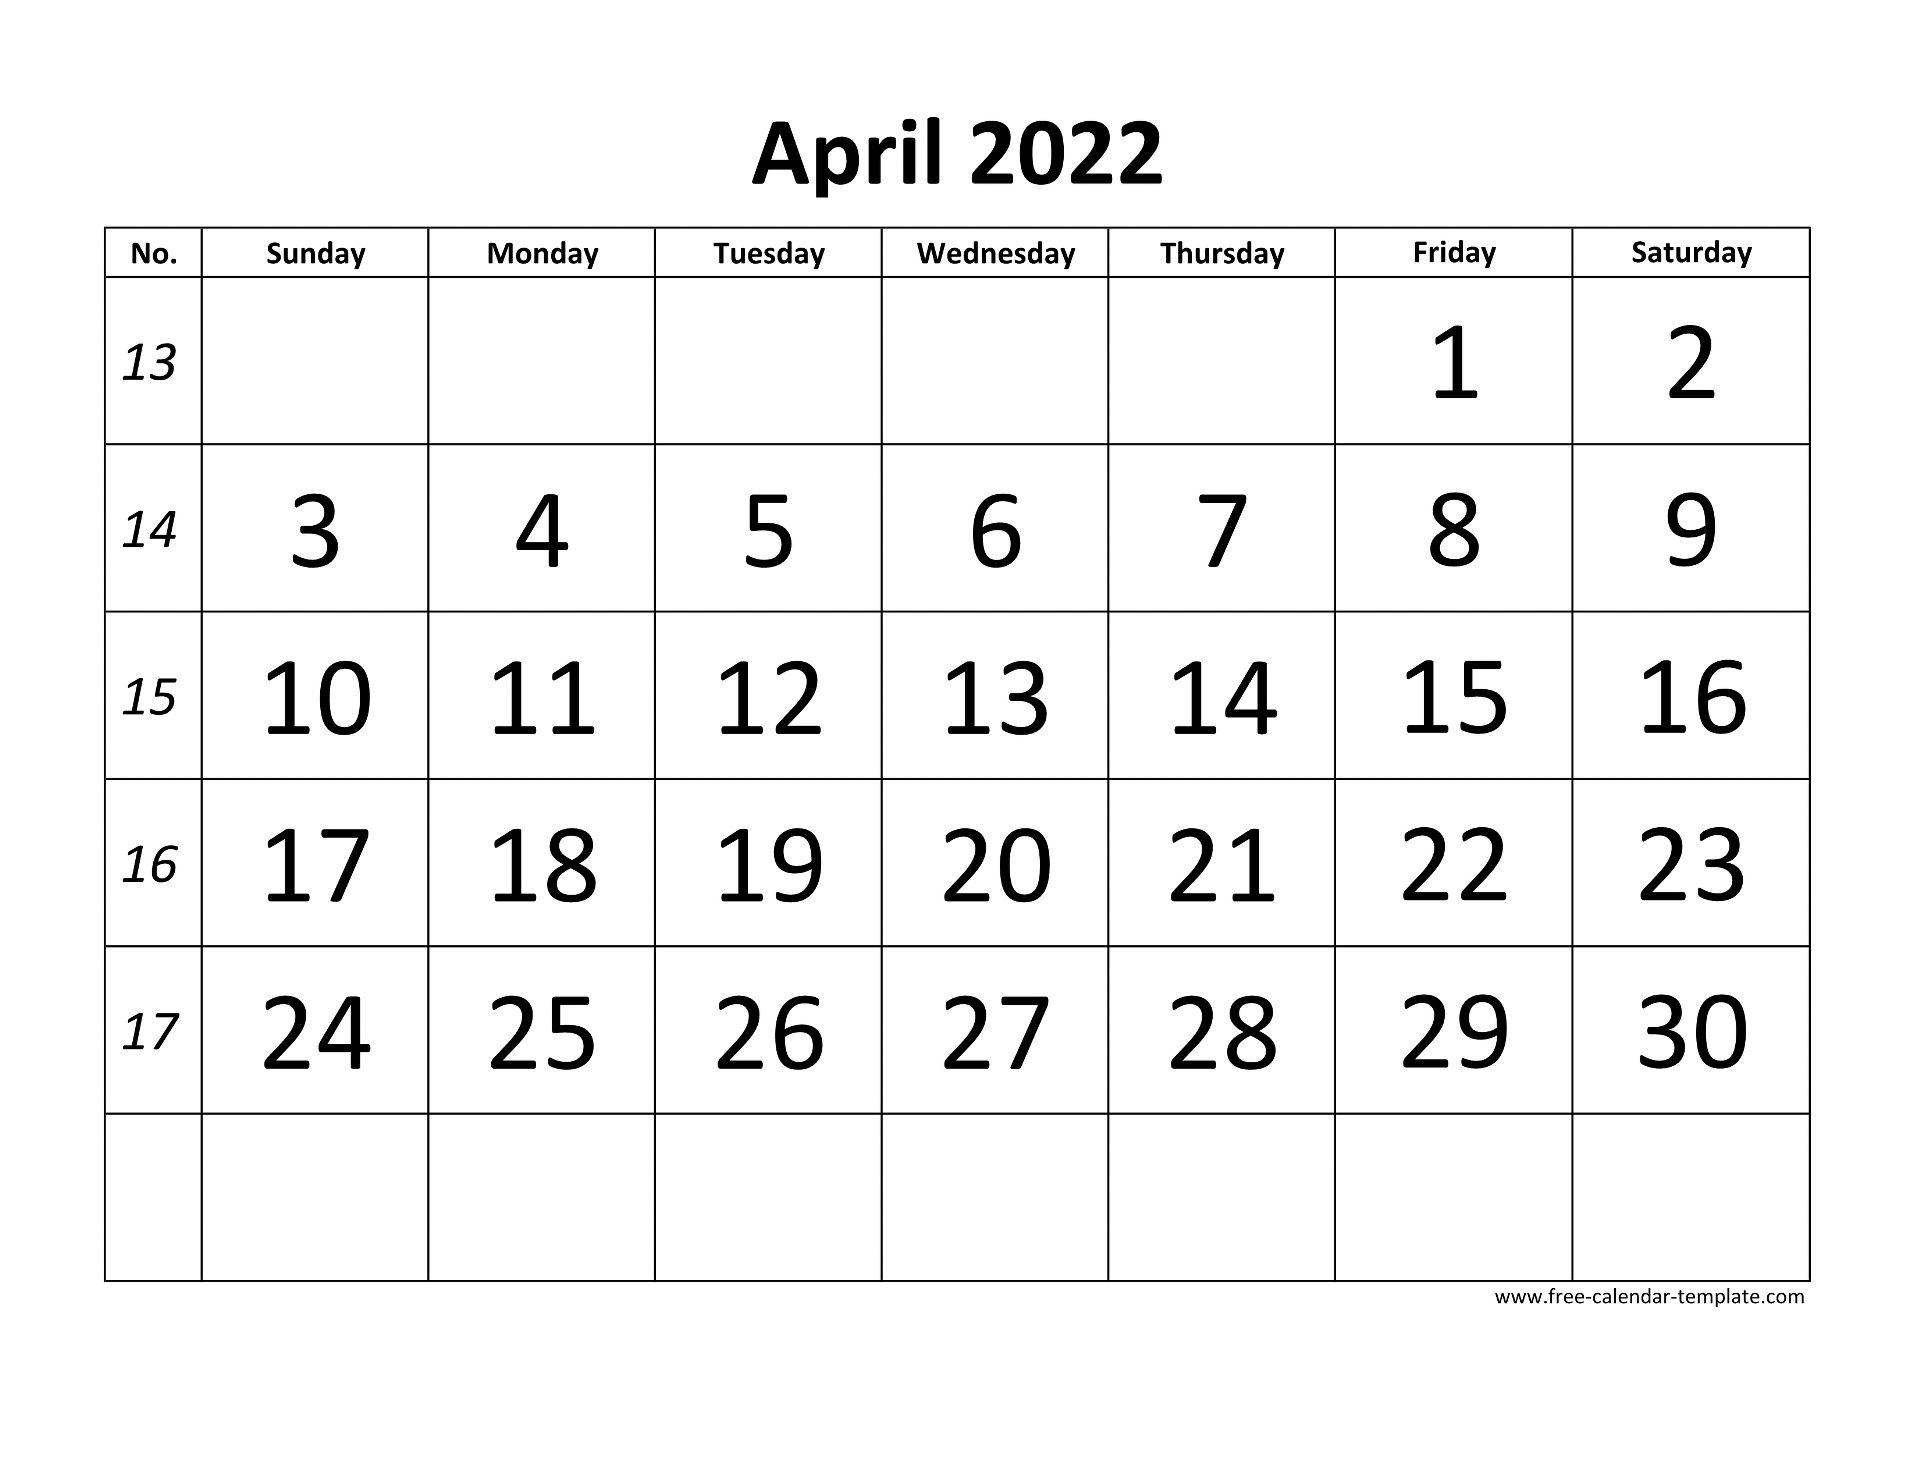 April 2022 Free Calendar Tempplate Free Calendar Template Com